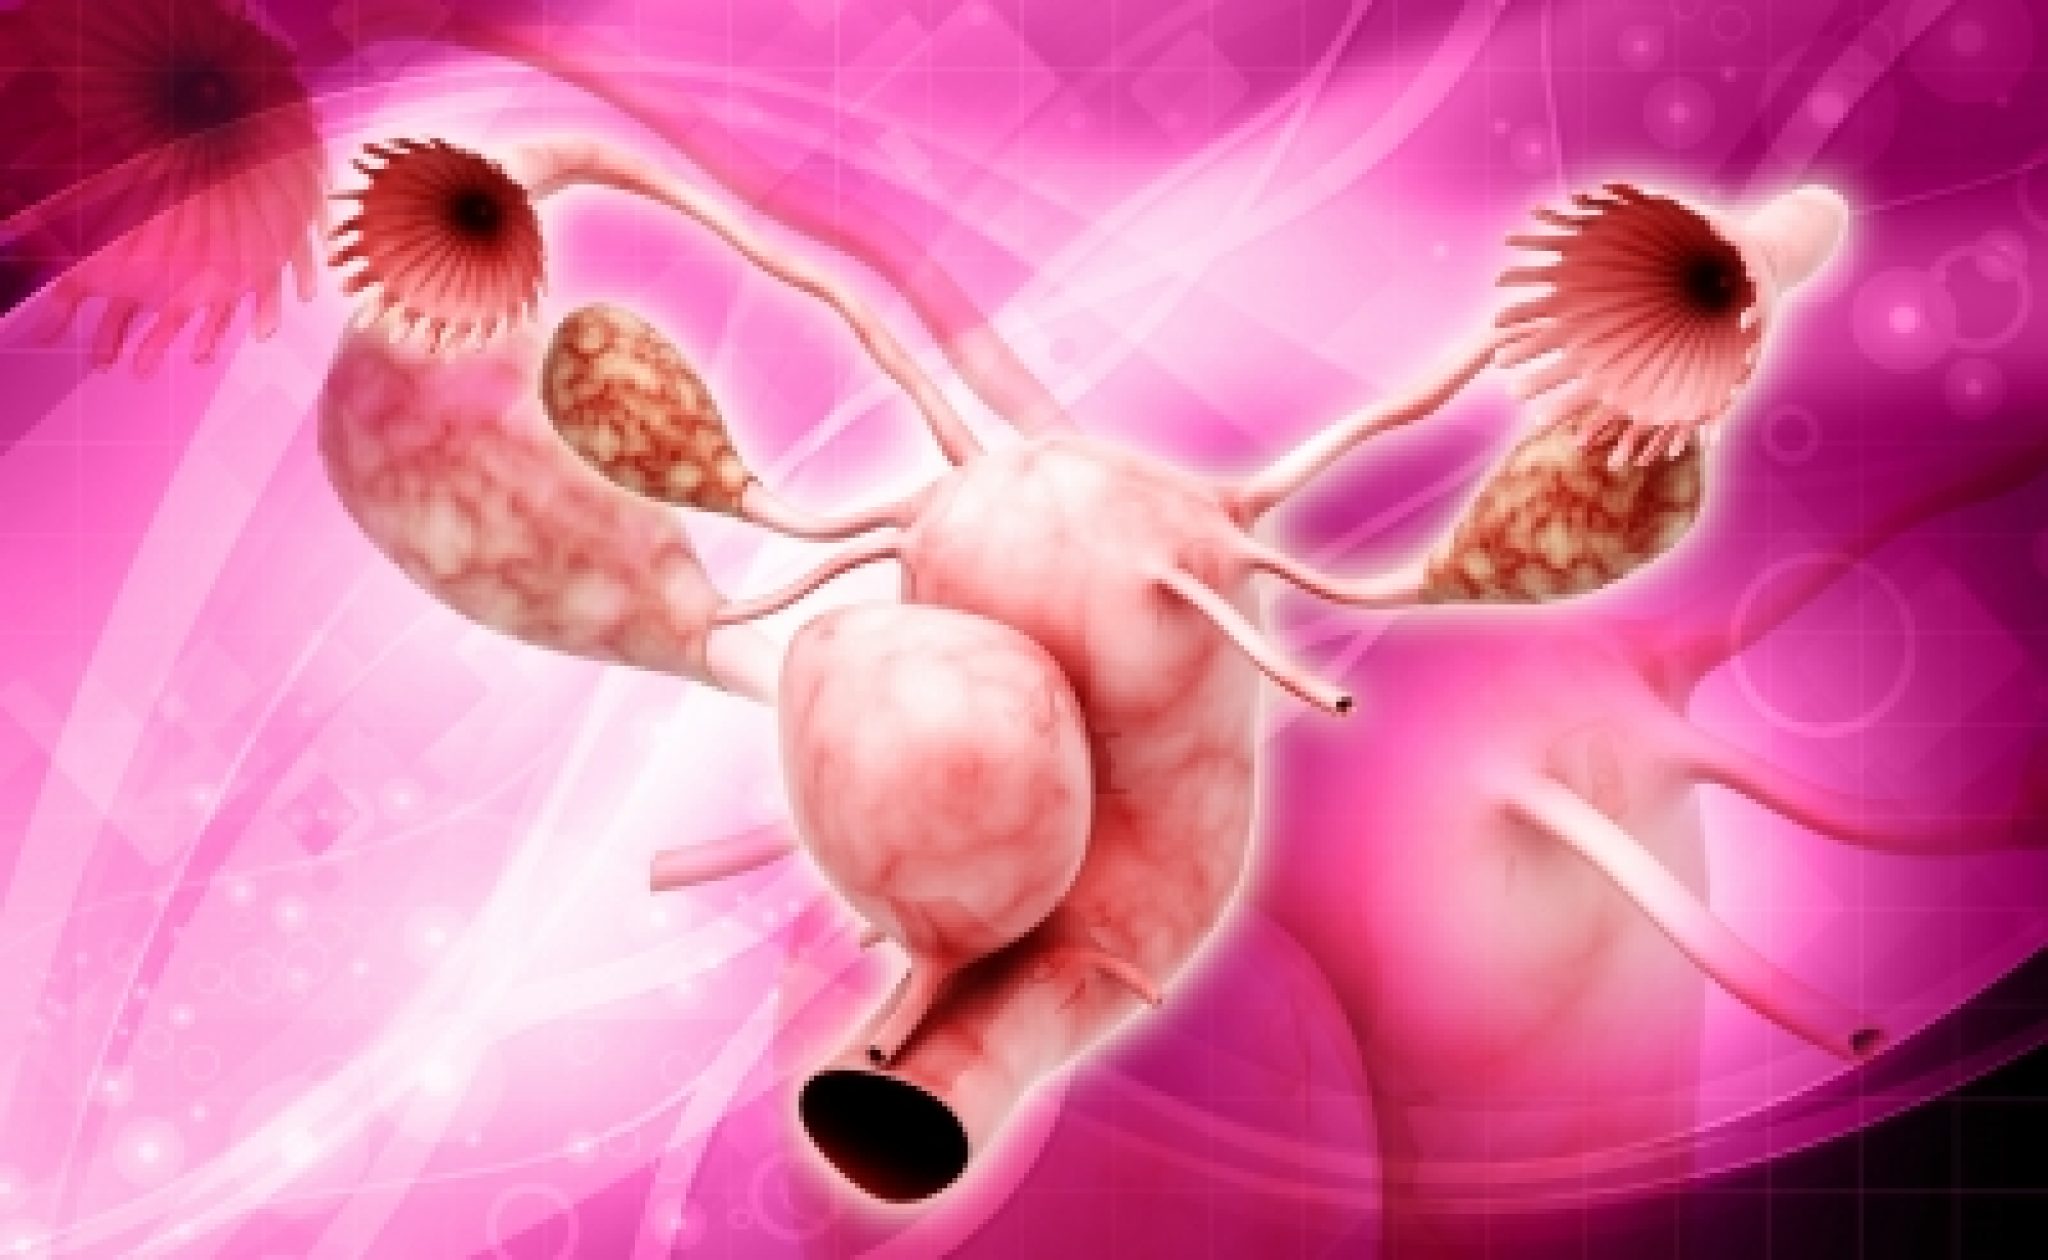 Формирования репродуктивных органов. Гинекология фон. Заболевания репродуктивной системы. Болезни женской репродуктивной системы. Фоновые заболевания яичников.